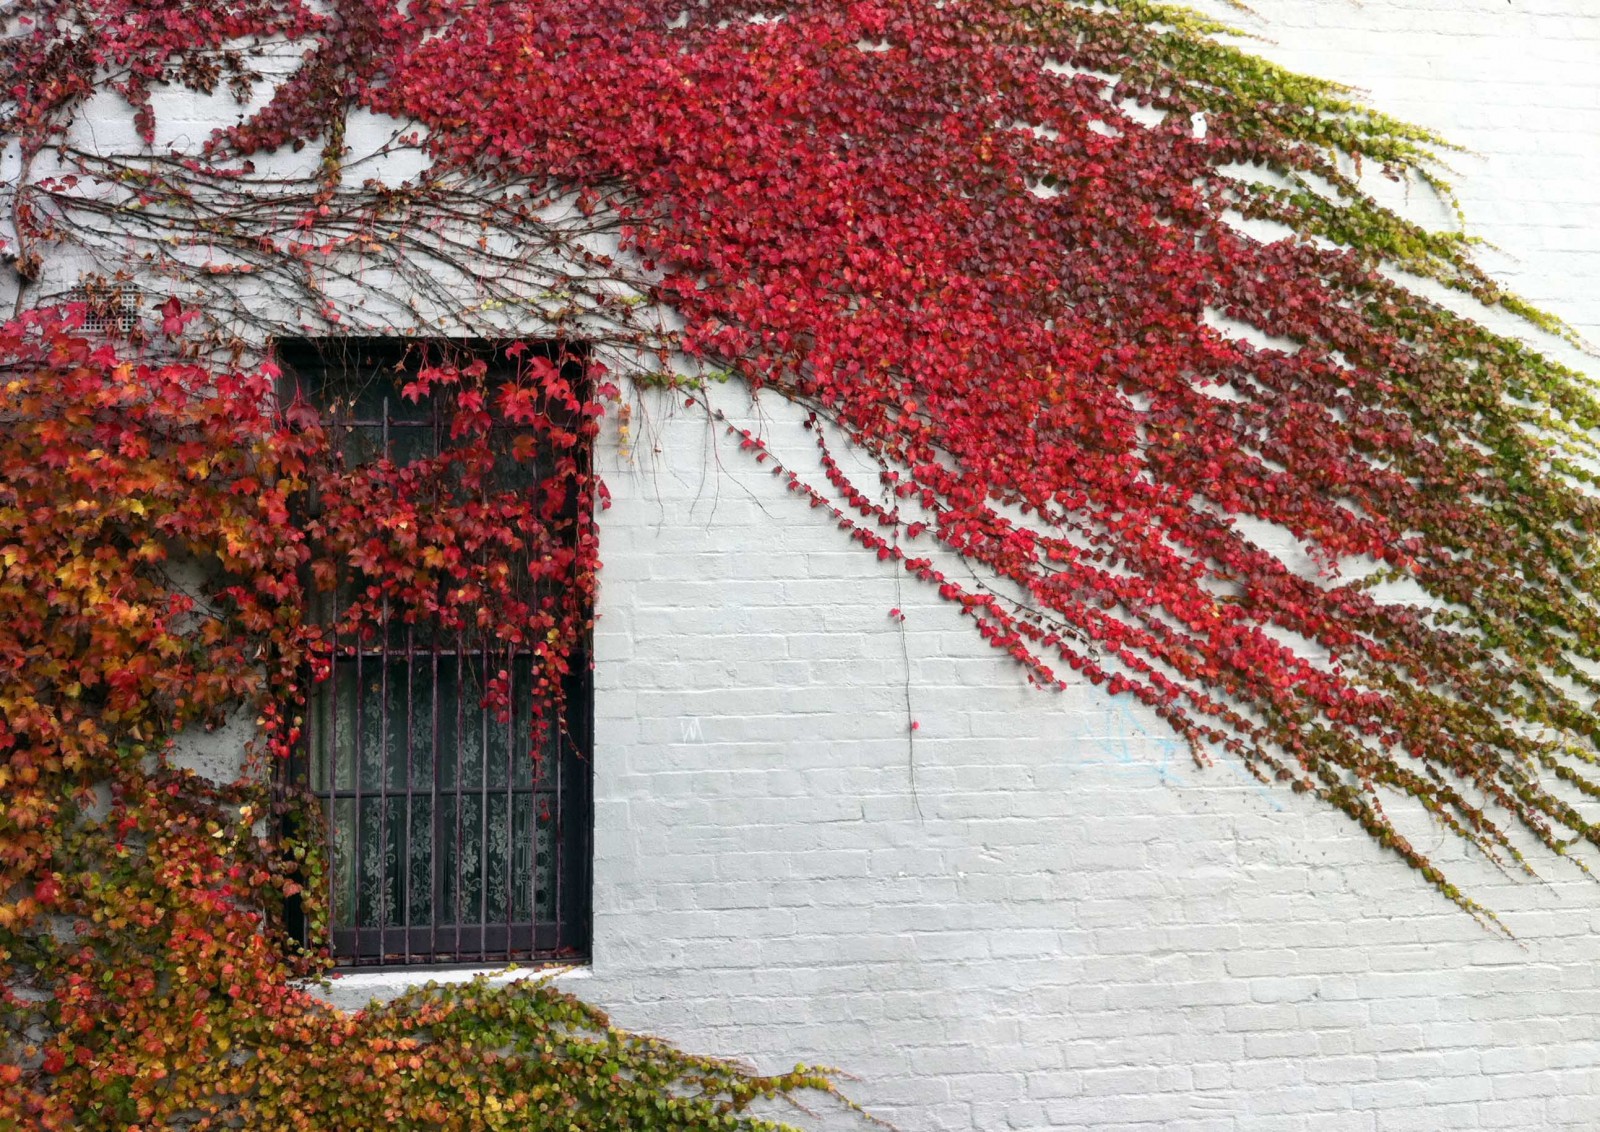 Sắc thu nhuốm vào từng ô cửa xinh xắn ở mỗi ngôi nhà ở Melbourne, nơi những mảng tường trắng được khoác lớp áo ba màu đỏ - vàng - xanh của một loại cây leo tường.